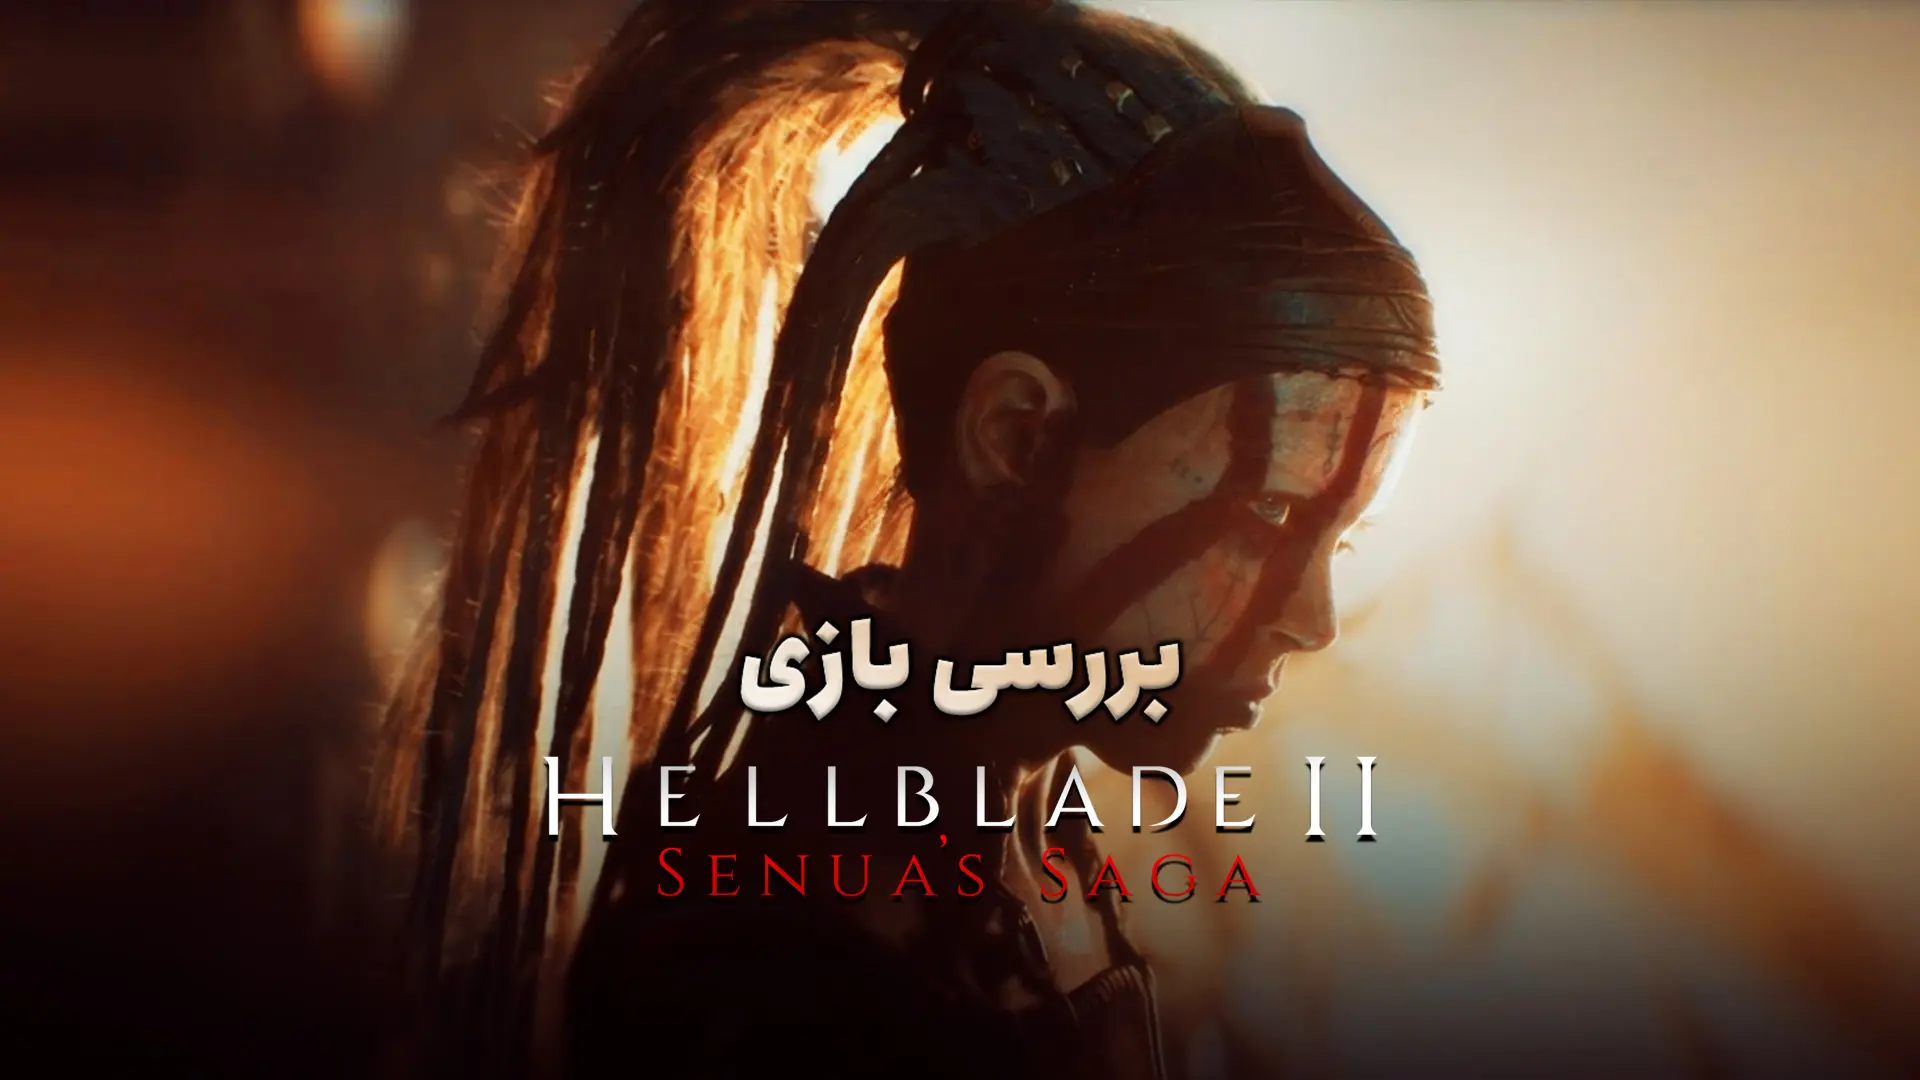 بررسی بازی Senua's Saga: Hellblade II؛ بازگشت حماسی سنوئا